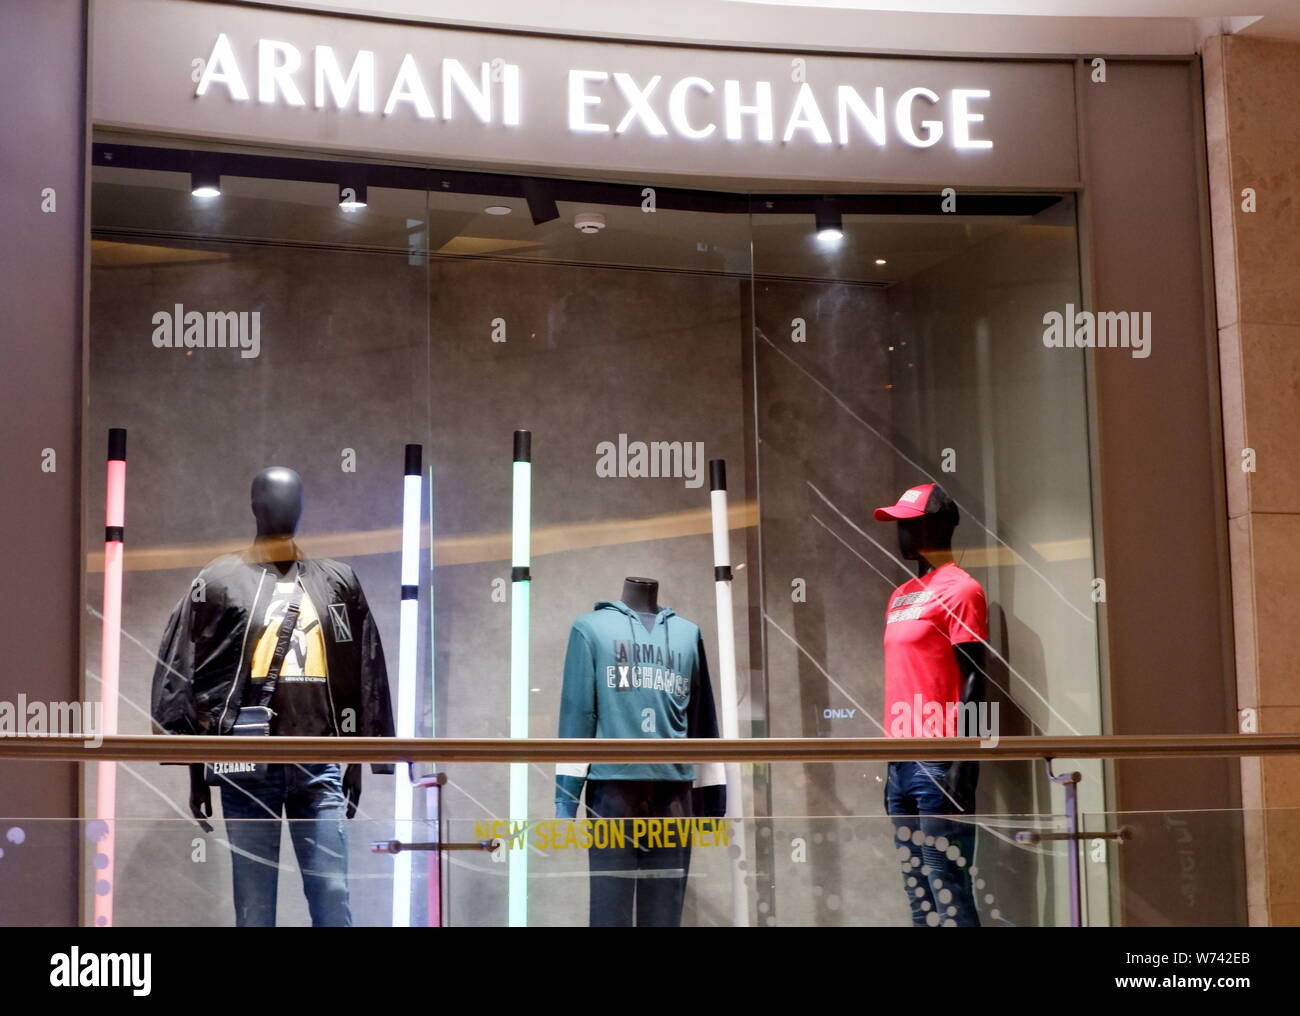 armani exchange showroom in india